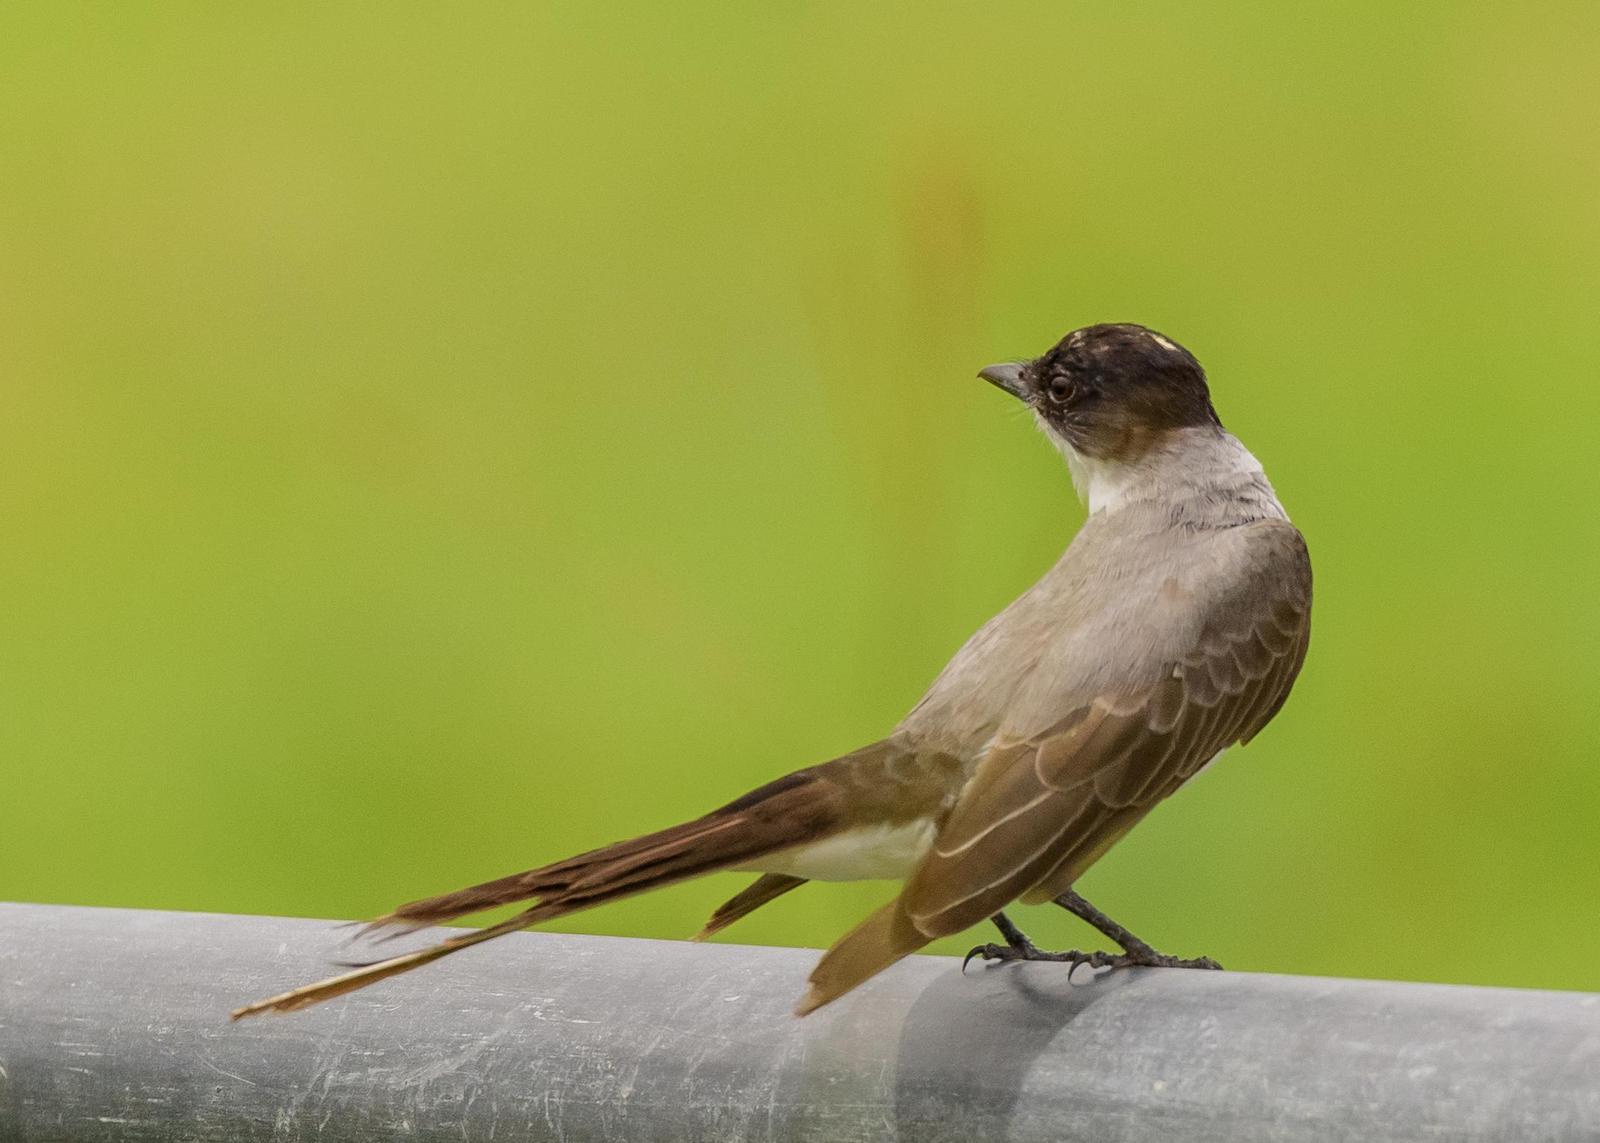 Fork-tailed Flycatcher Photo by Keshava Mysore